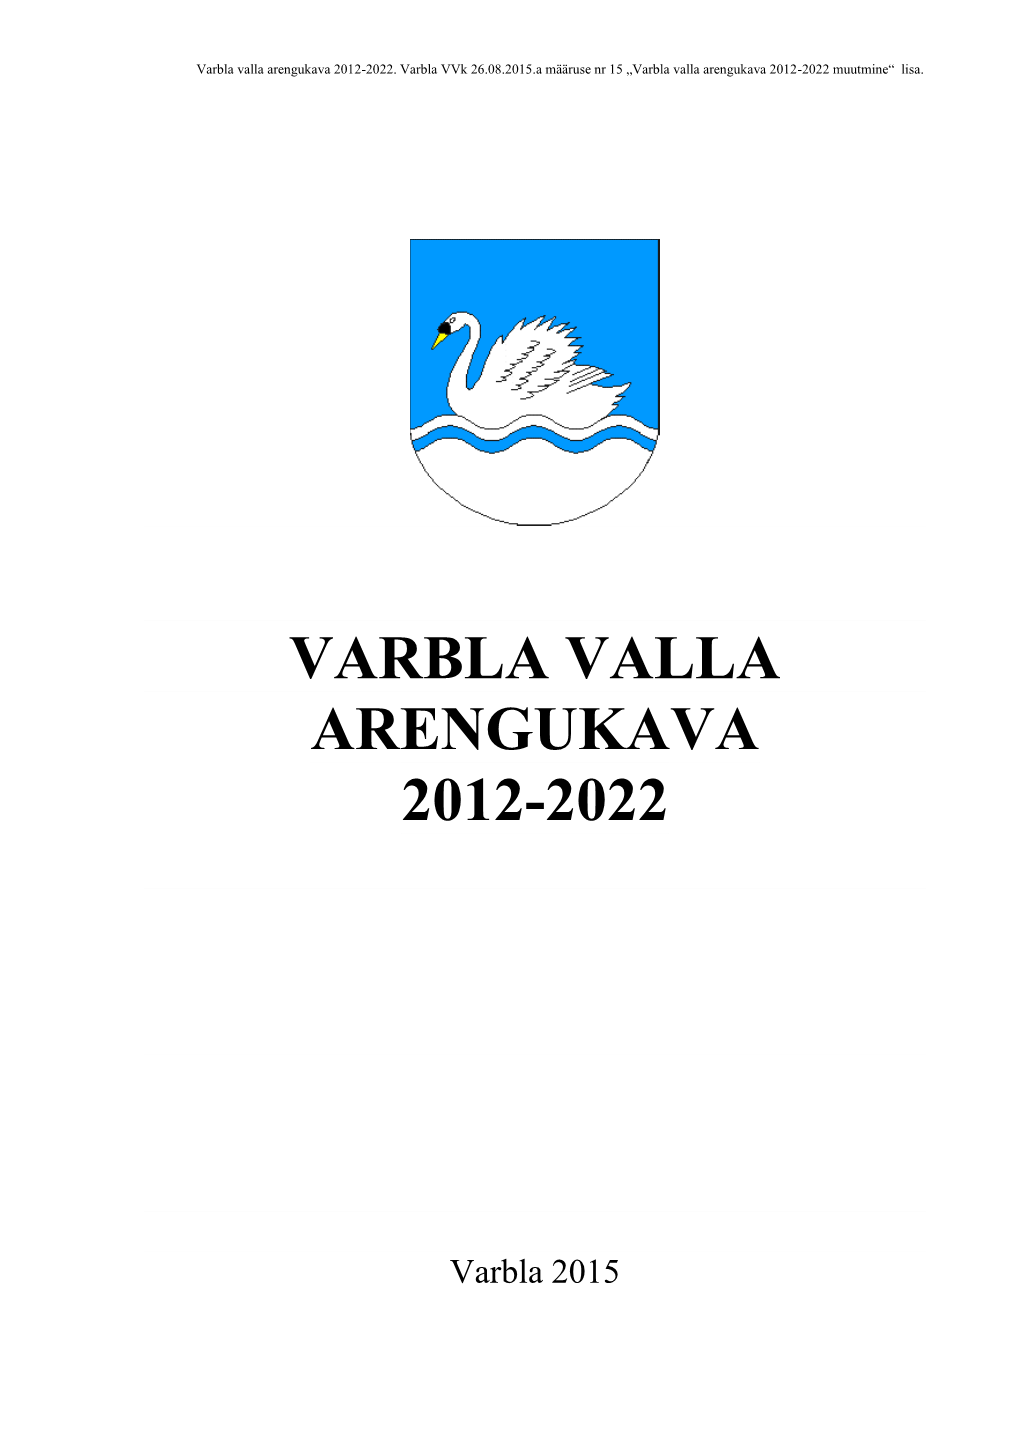 Varbla Valla Arengukava 2012-2022